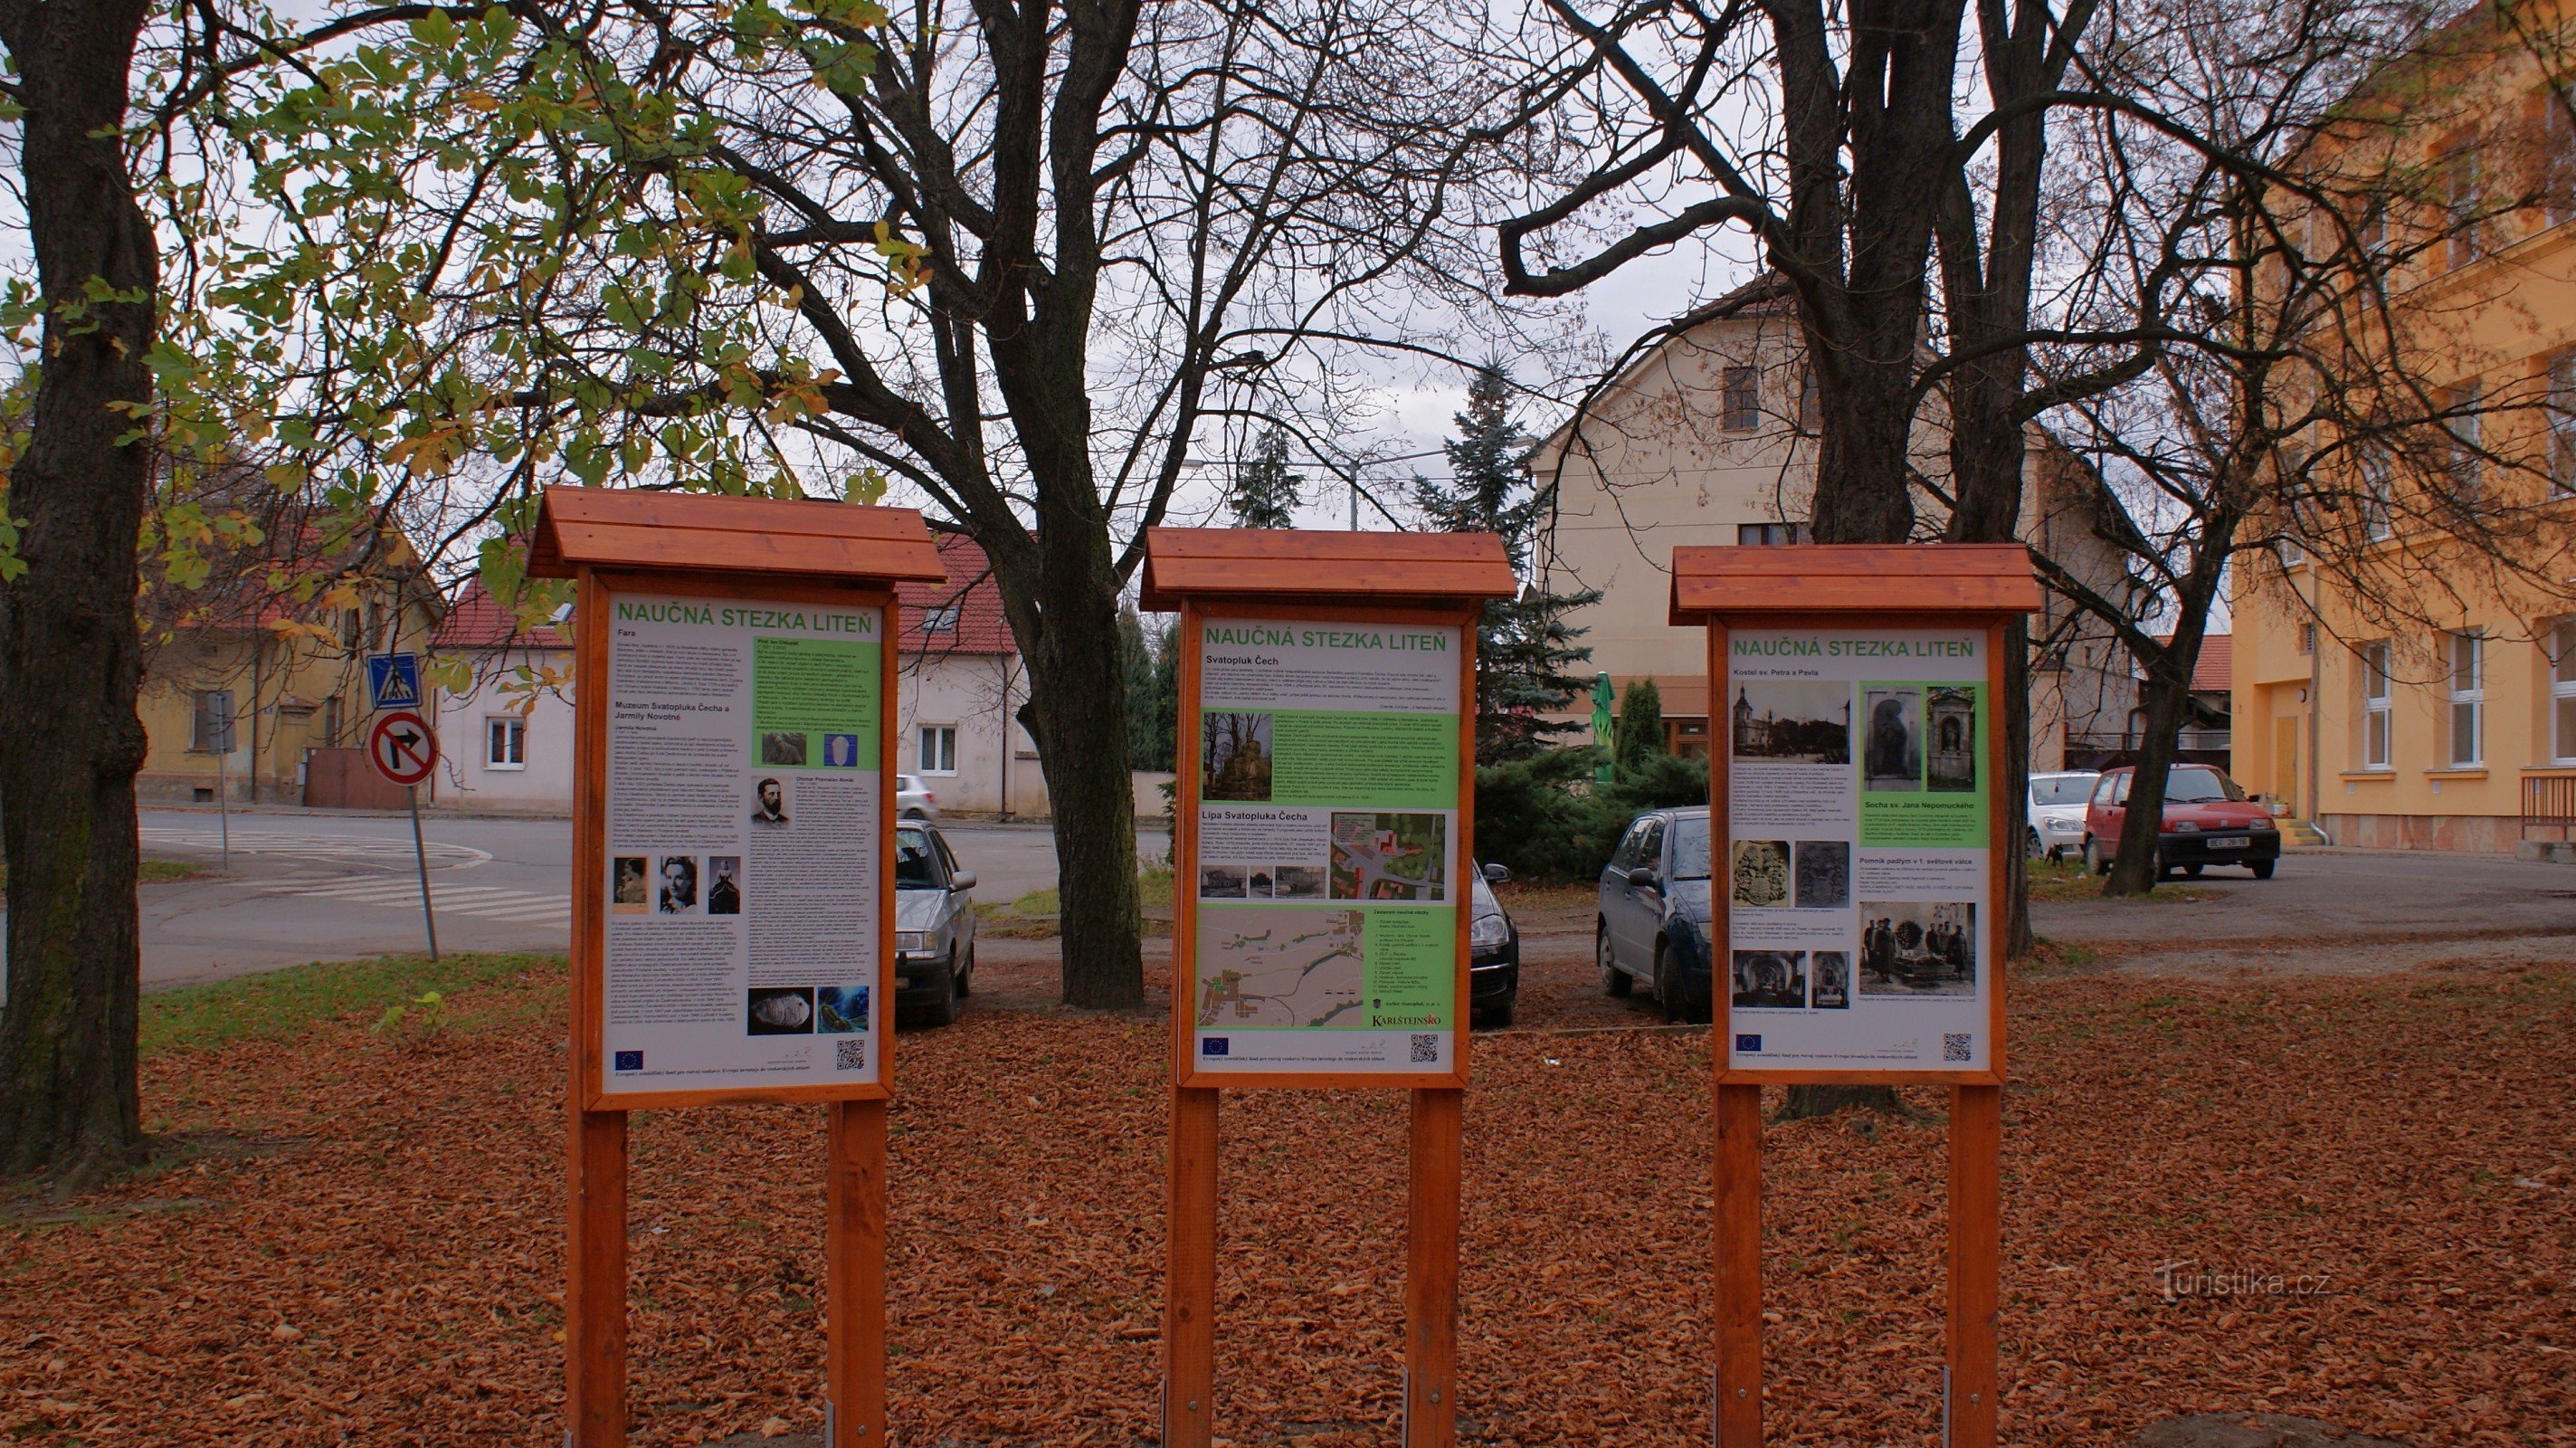 Stop panelek a Liteń tanösvényhez a Svatopluka Cecha kertben